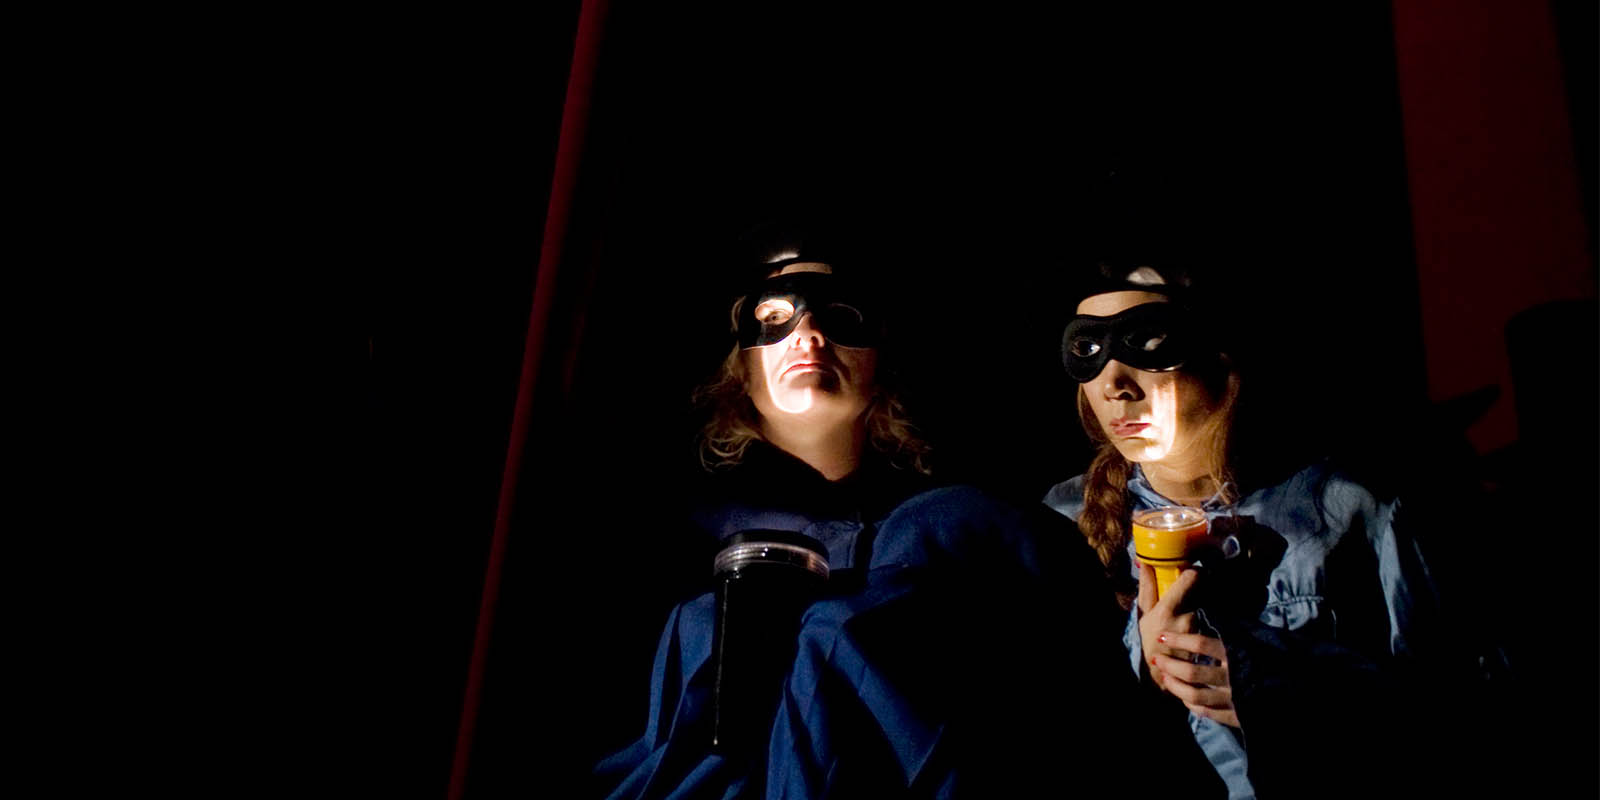 Föreställningsfoto från "Publiken", Anna Takanen och Amelie Thorén lyser med ficklampor under sina ansikten och de bär svarta masker för ögonen.